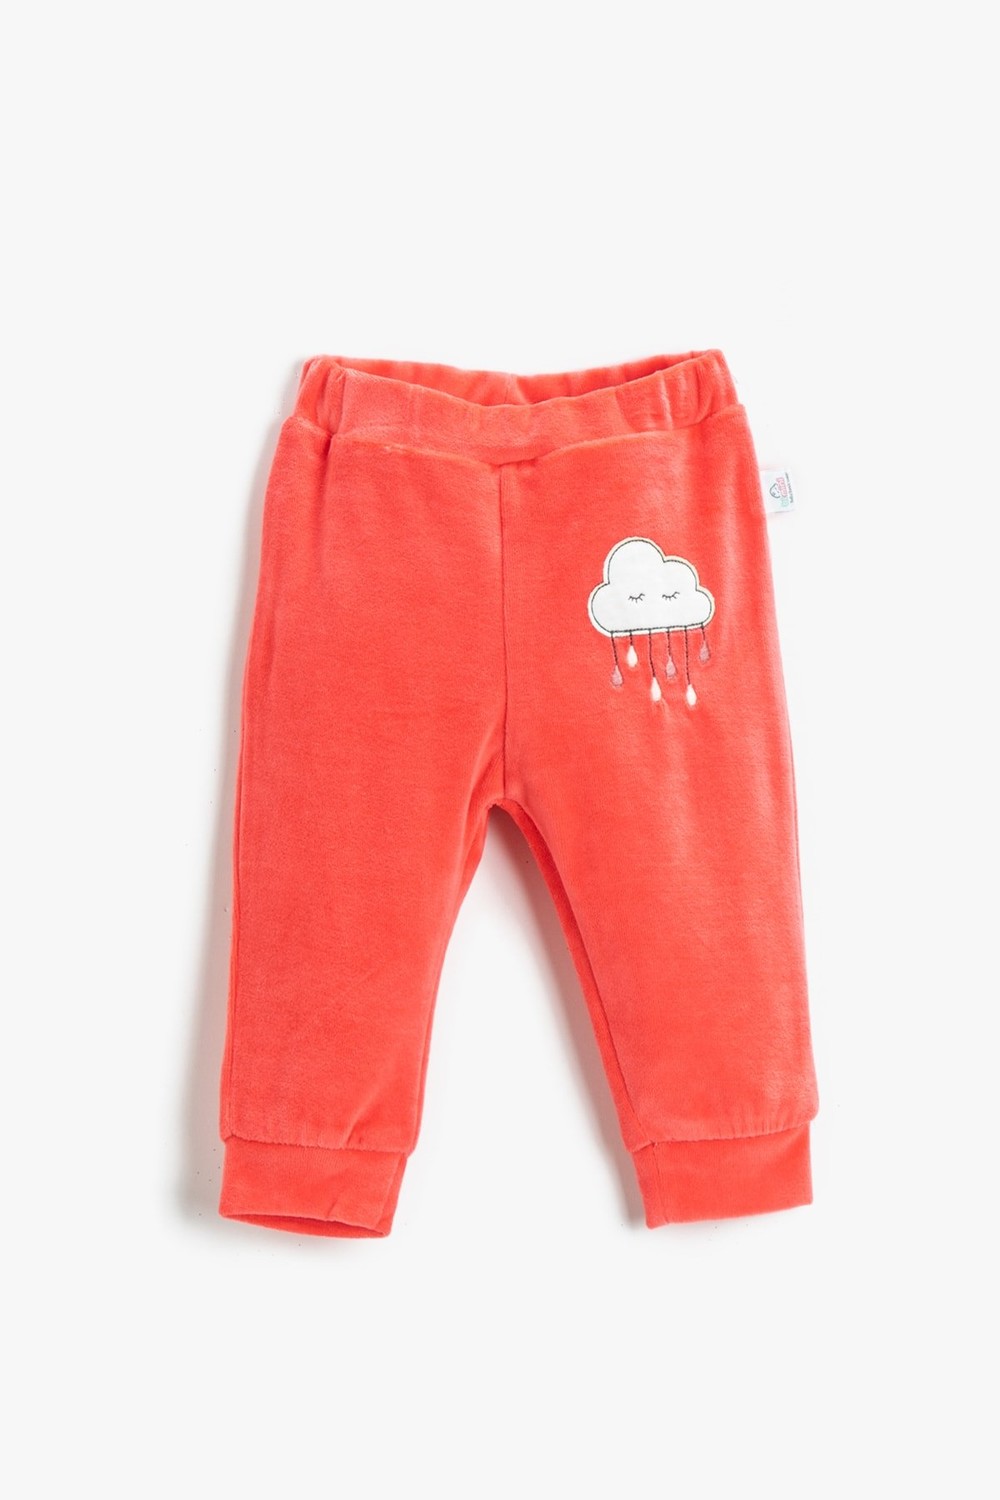 Koton Baby Boy Coral Sweatpants